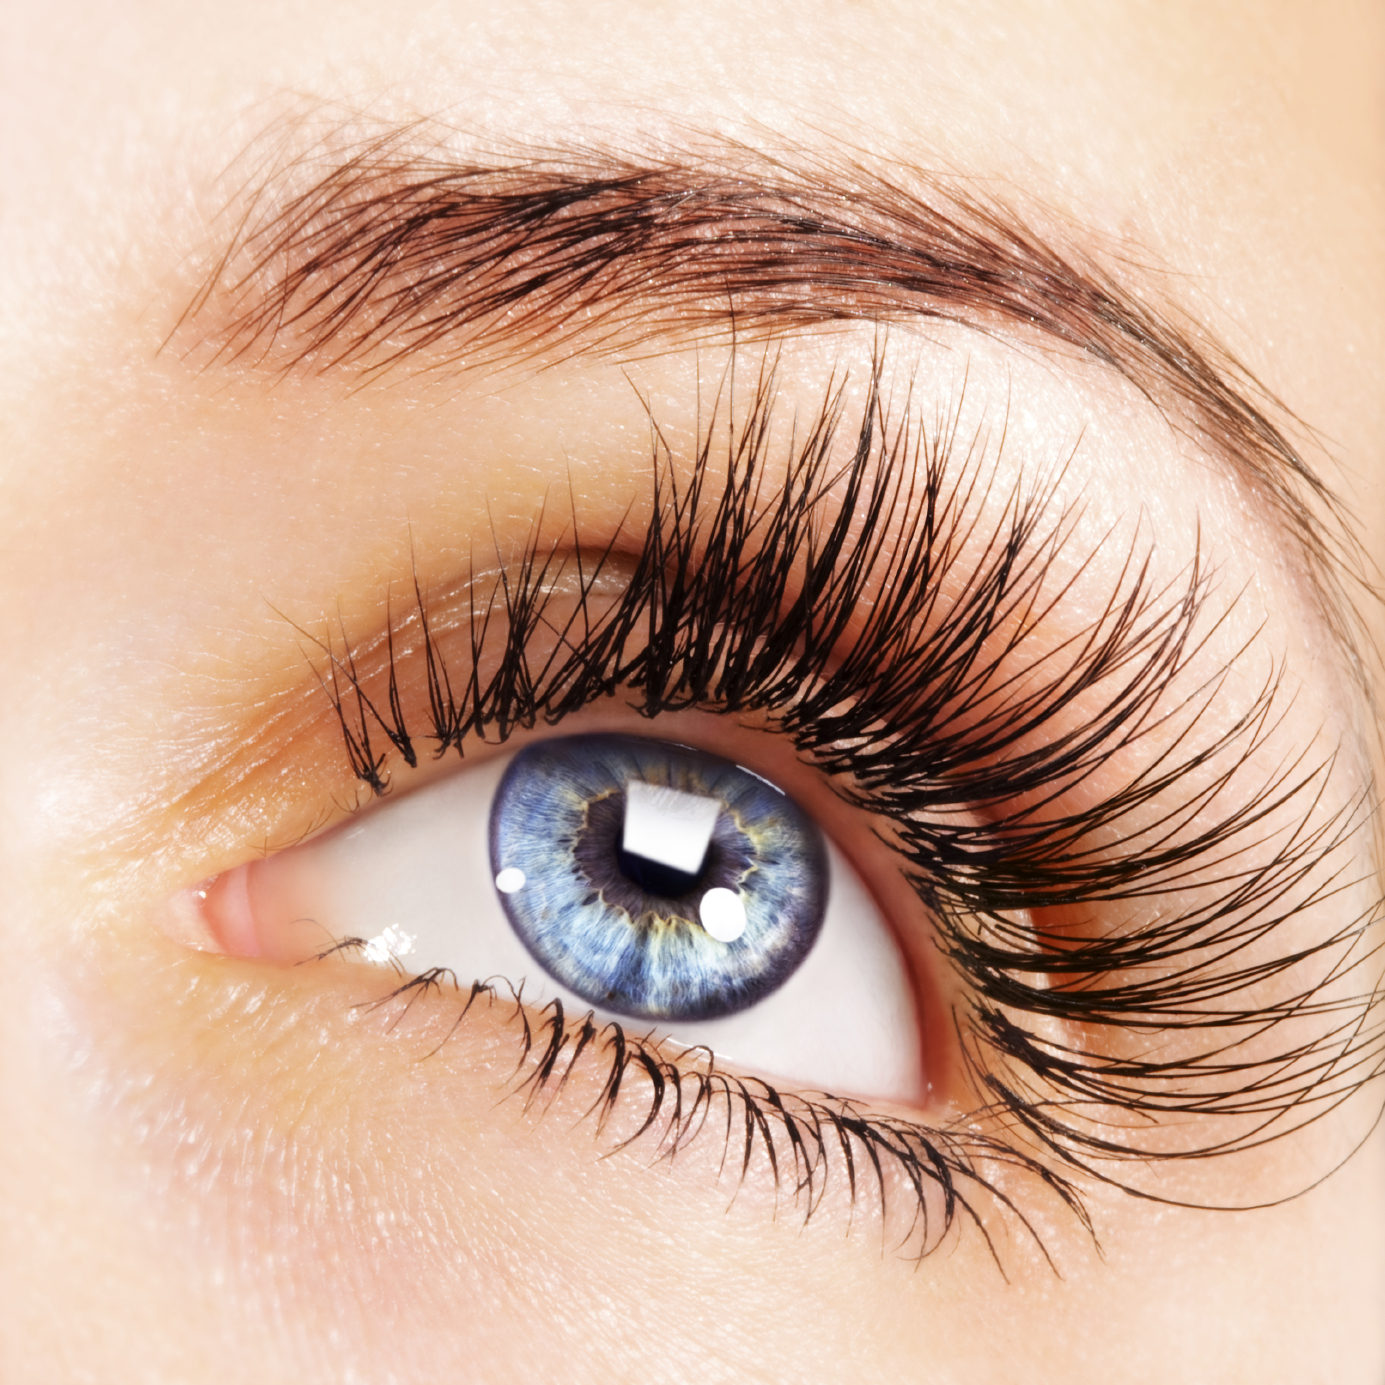 Woman blue eye with extremely long eyelashes